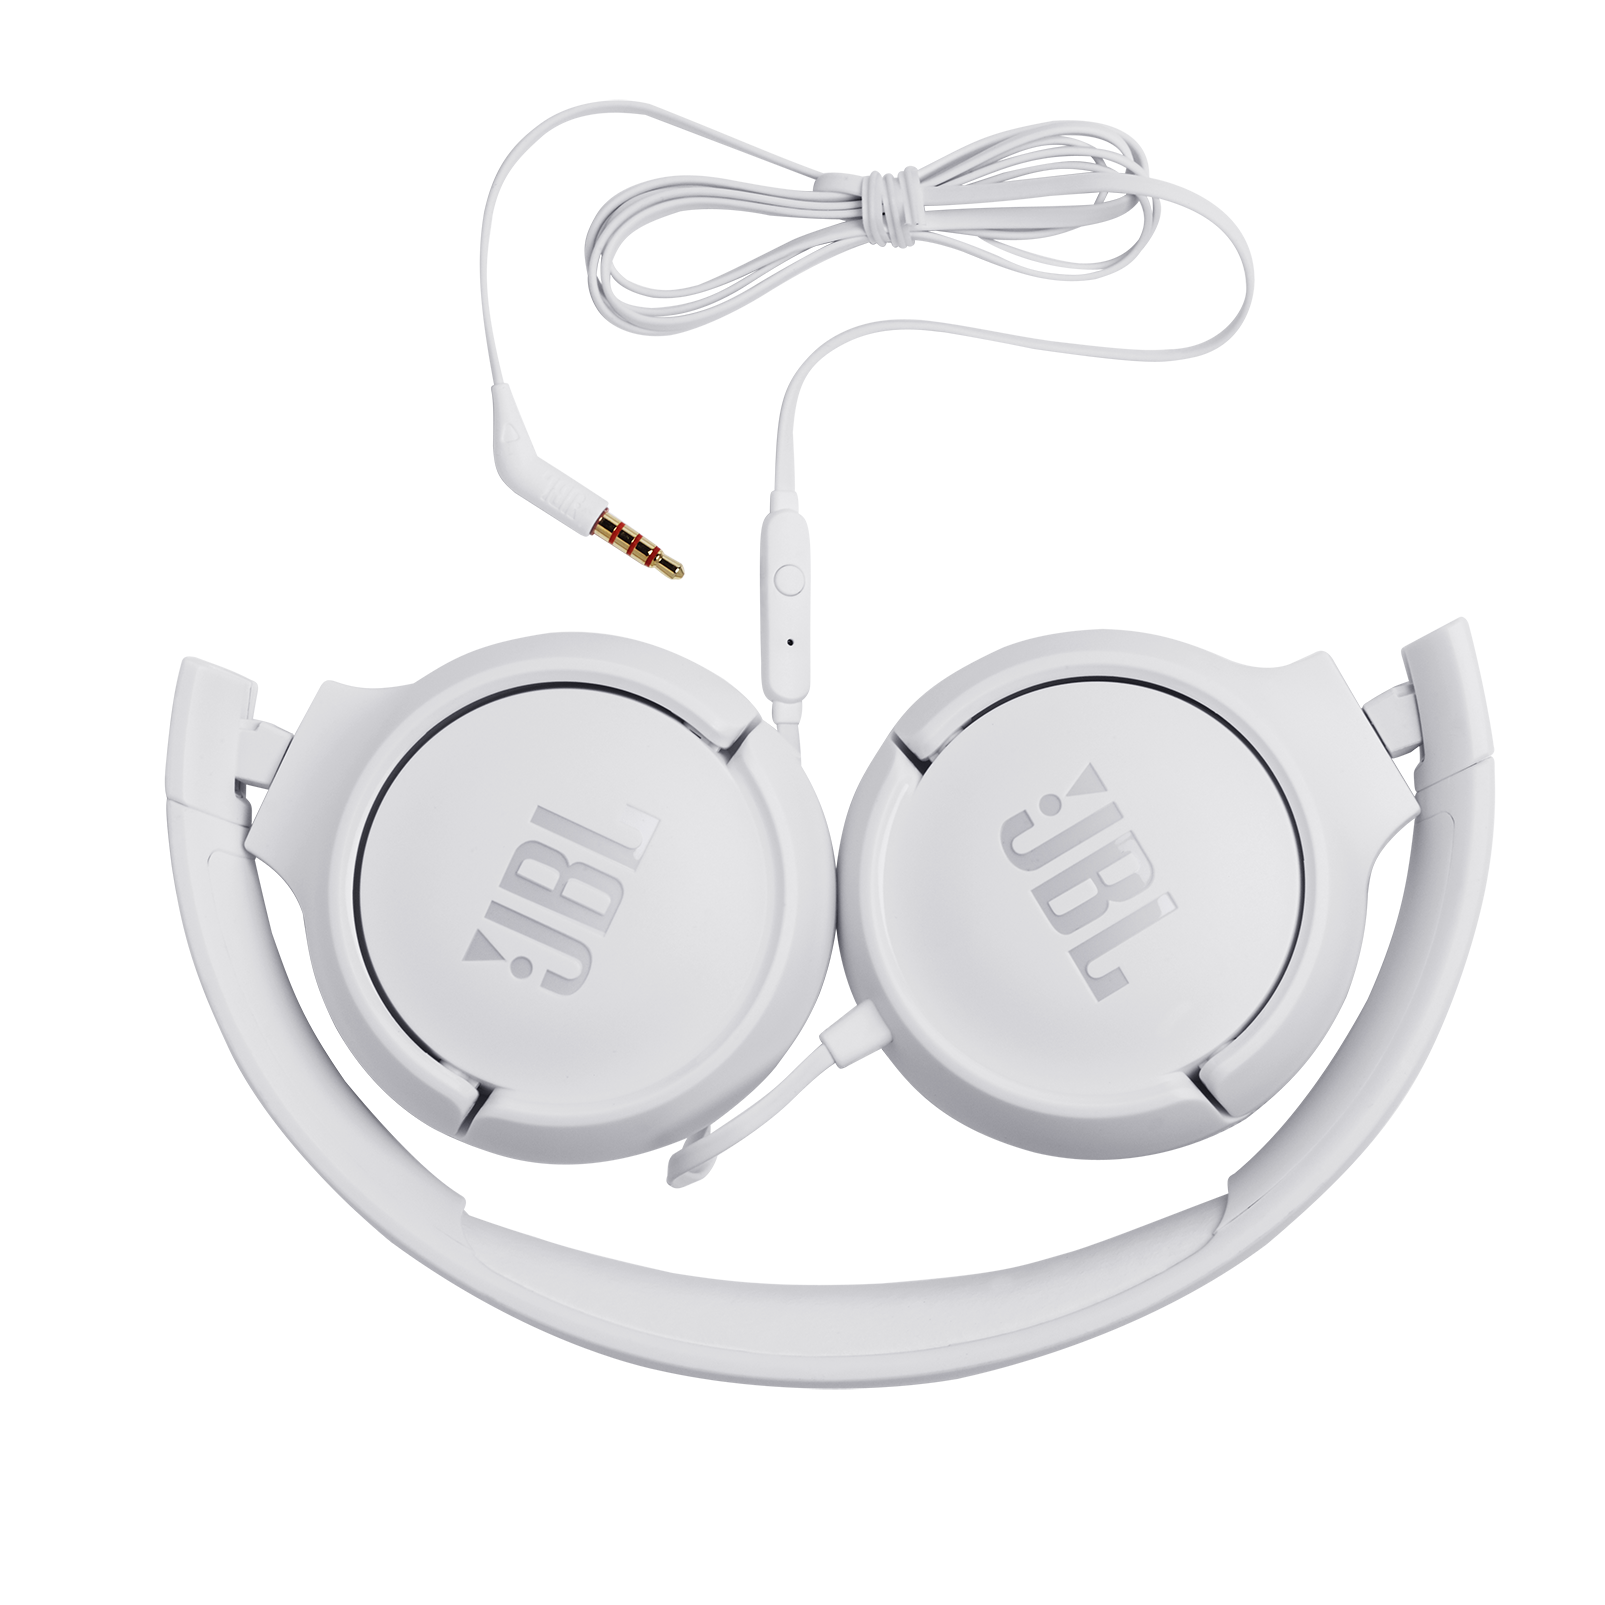 JBL Tune 500 - White - Wired on-ear headphones - Detailshot 1